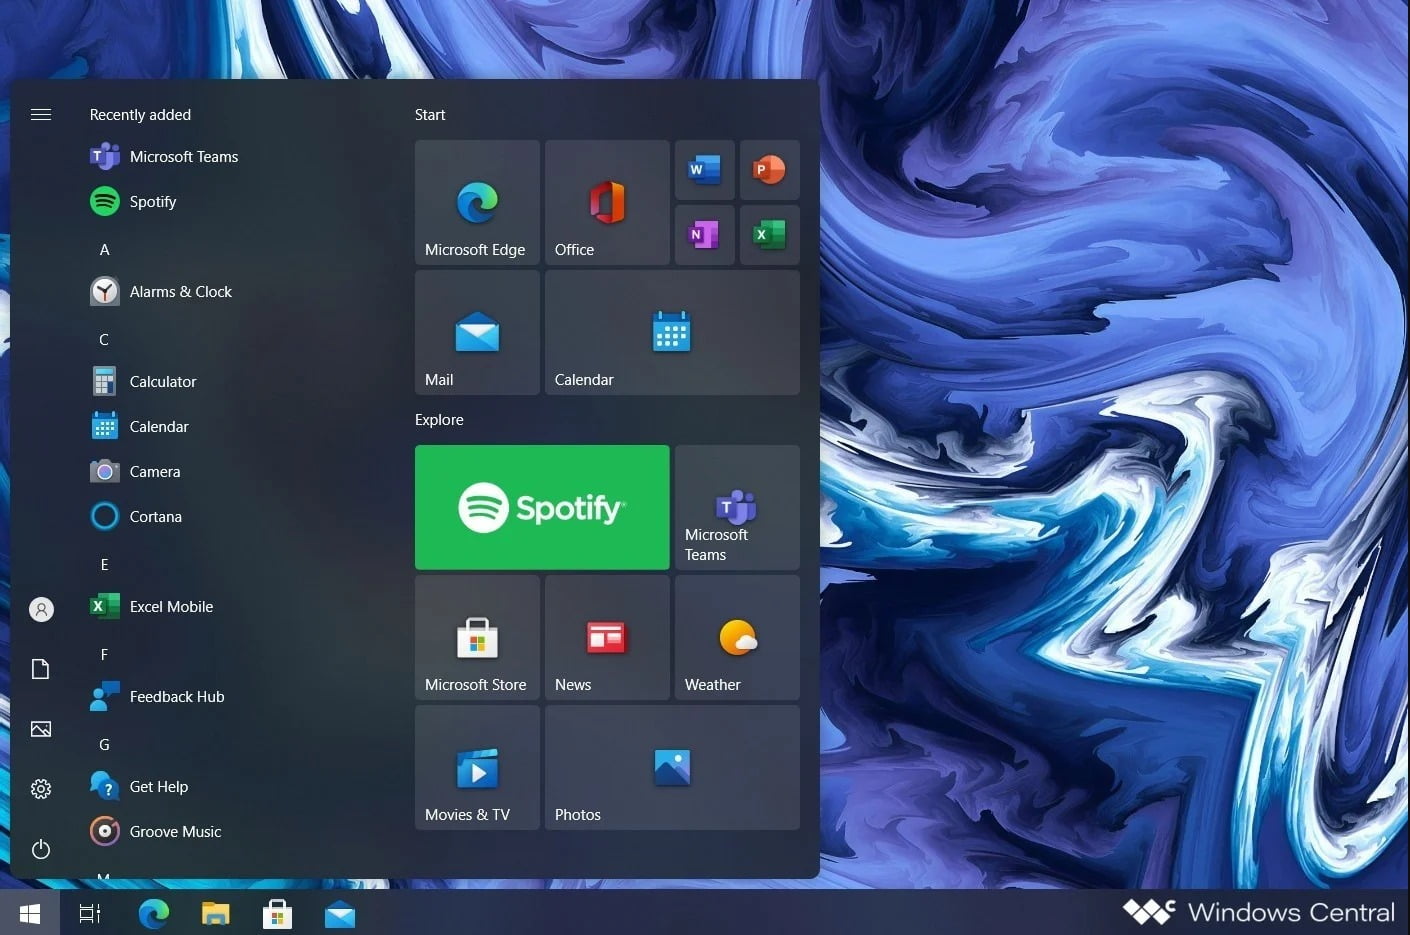 Posible apariencia del Menú Inicio en Windows 10 Sun Valley